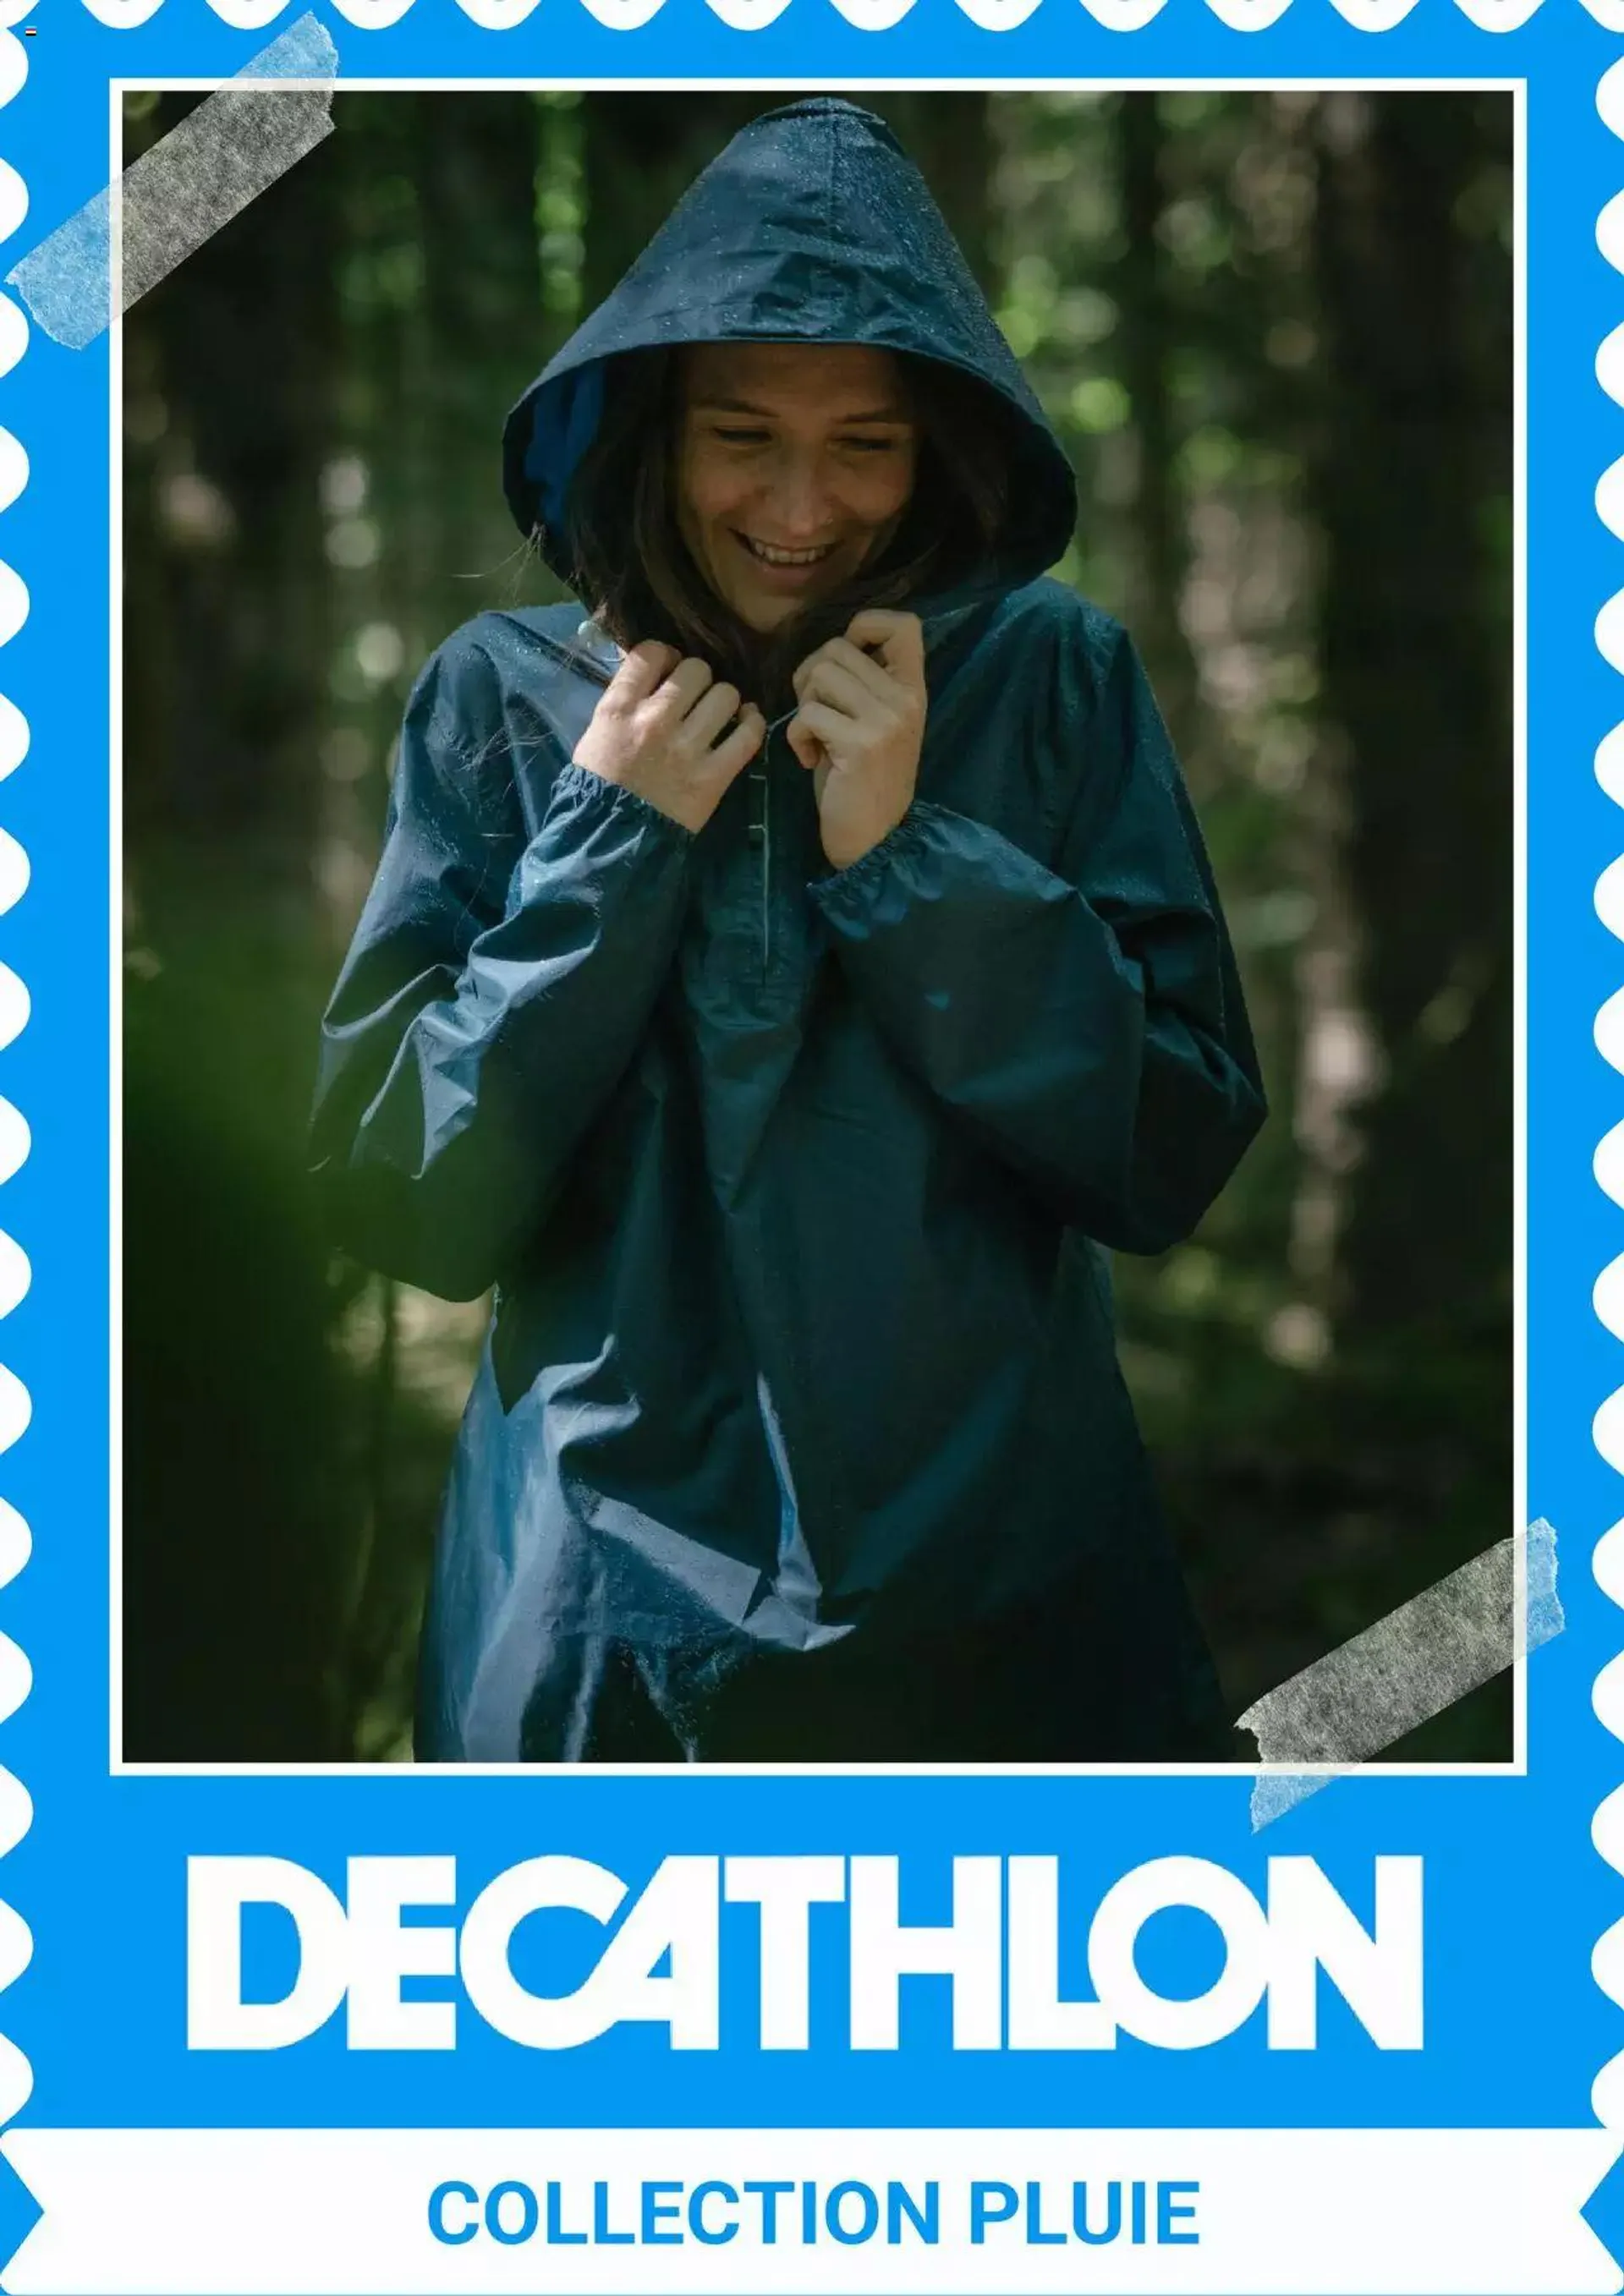 Decathlon folder/publicité - 0